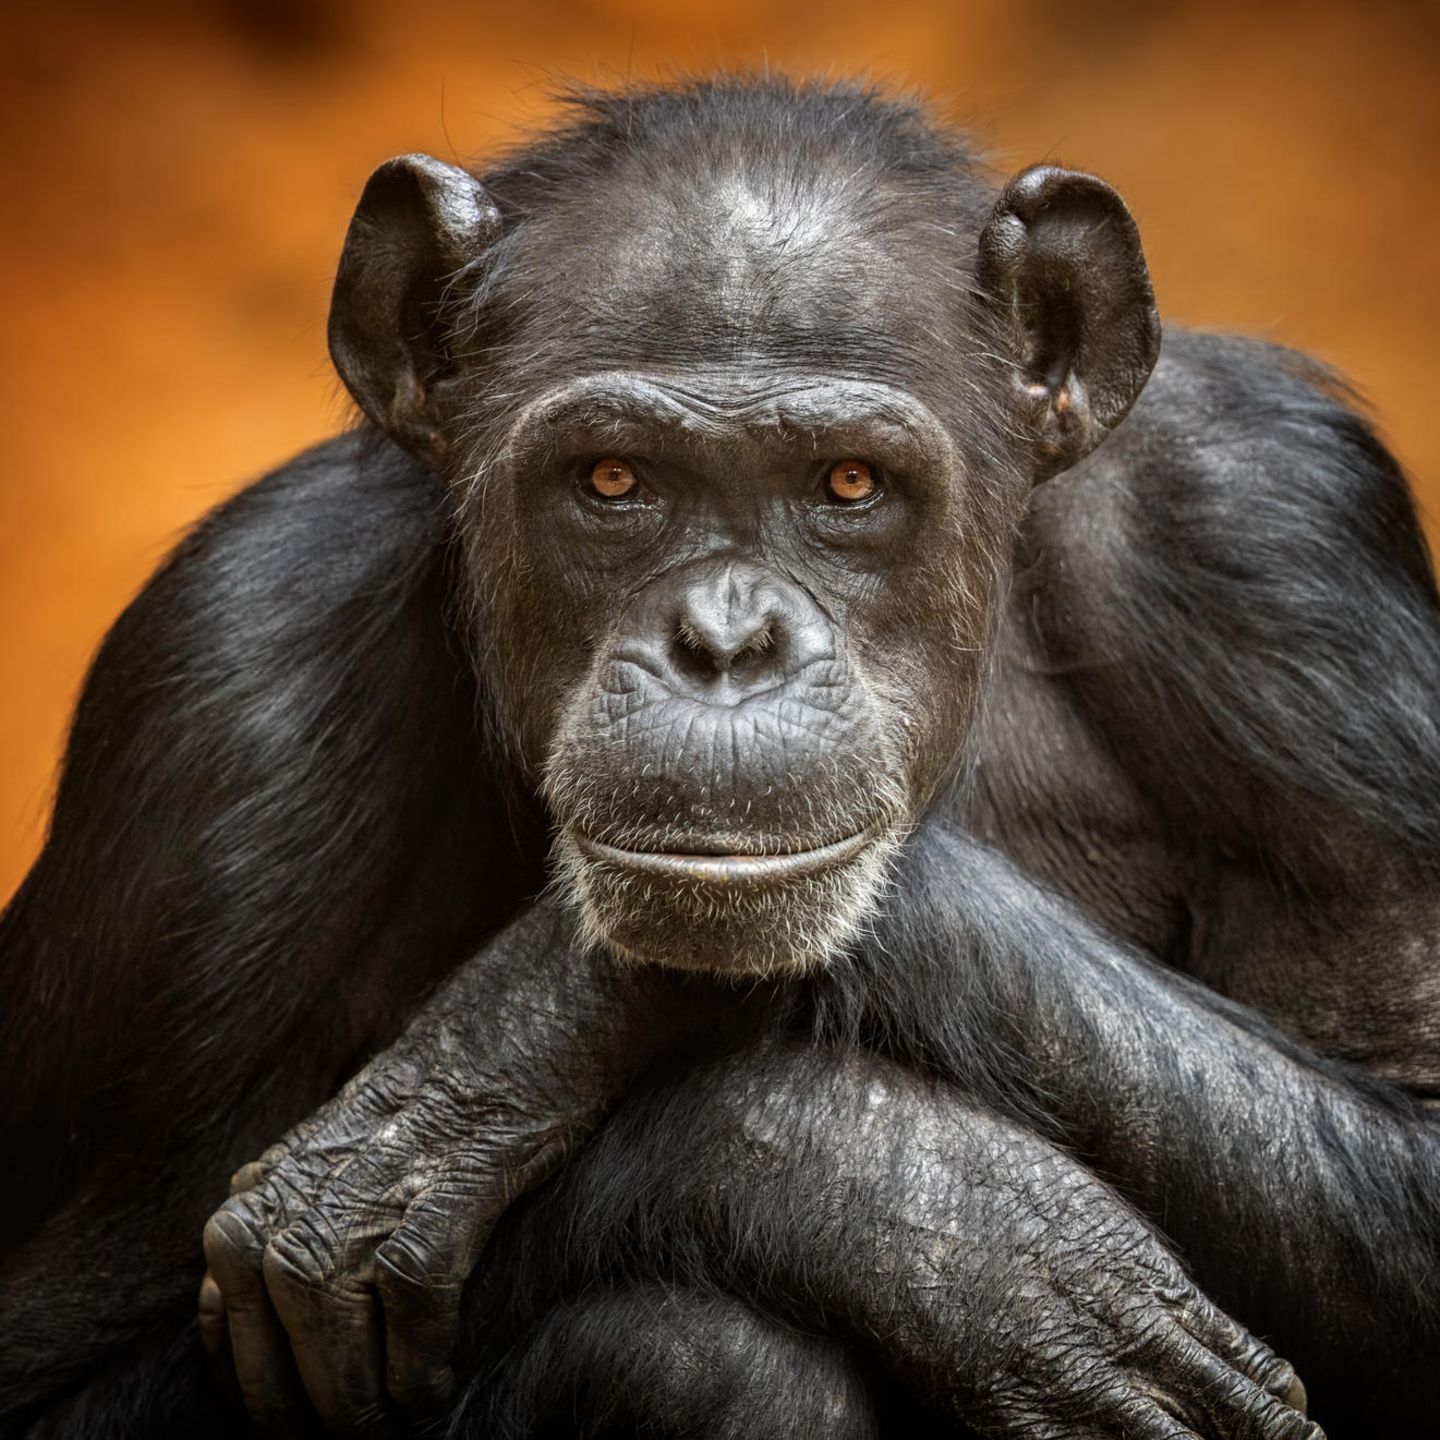 Schimpansen benutzen zahlreiche Werkzeuge, haben ein Selbsbewusstsein und können sich in ihr Gegenüber hineinversetzen. Sind sie so verschieden von uns?